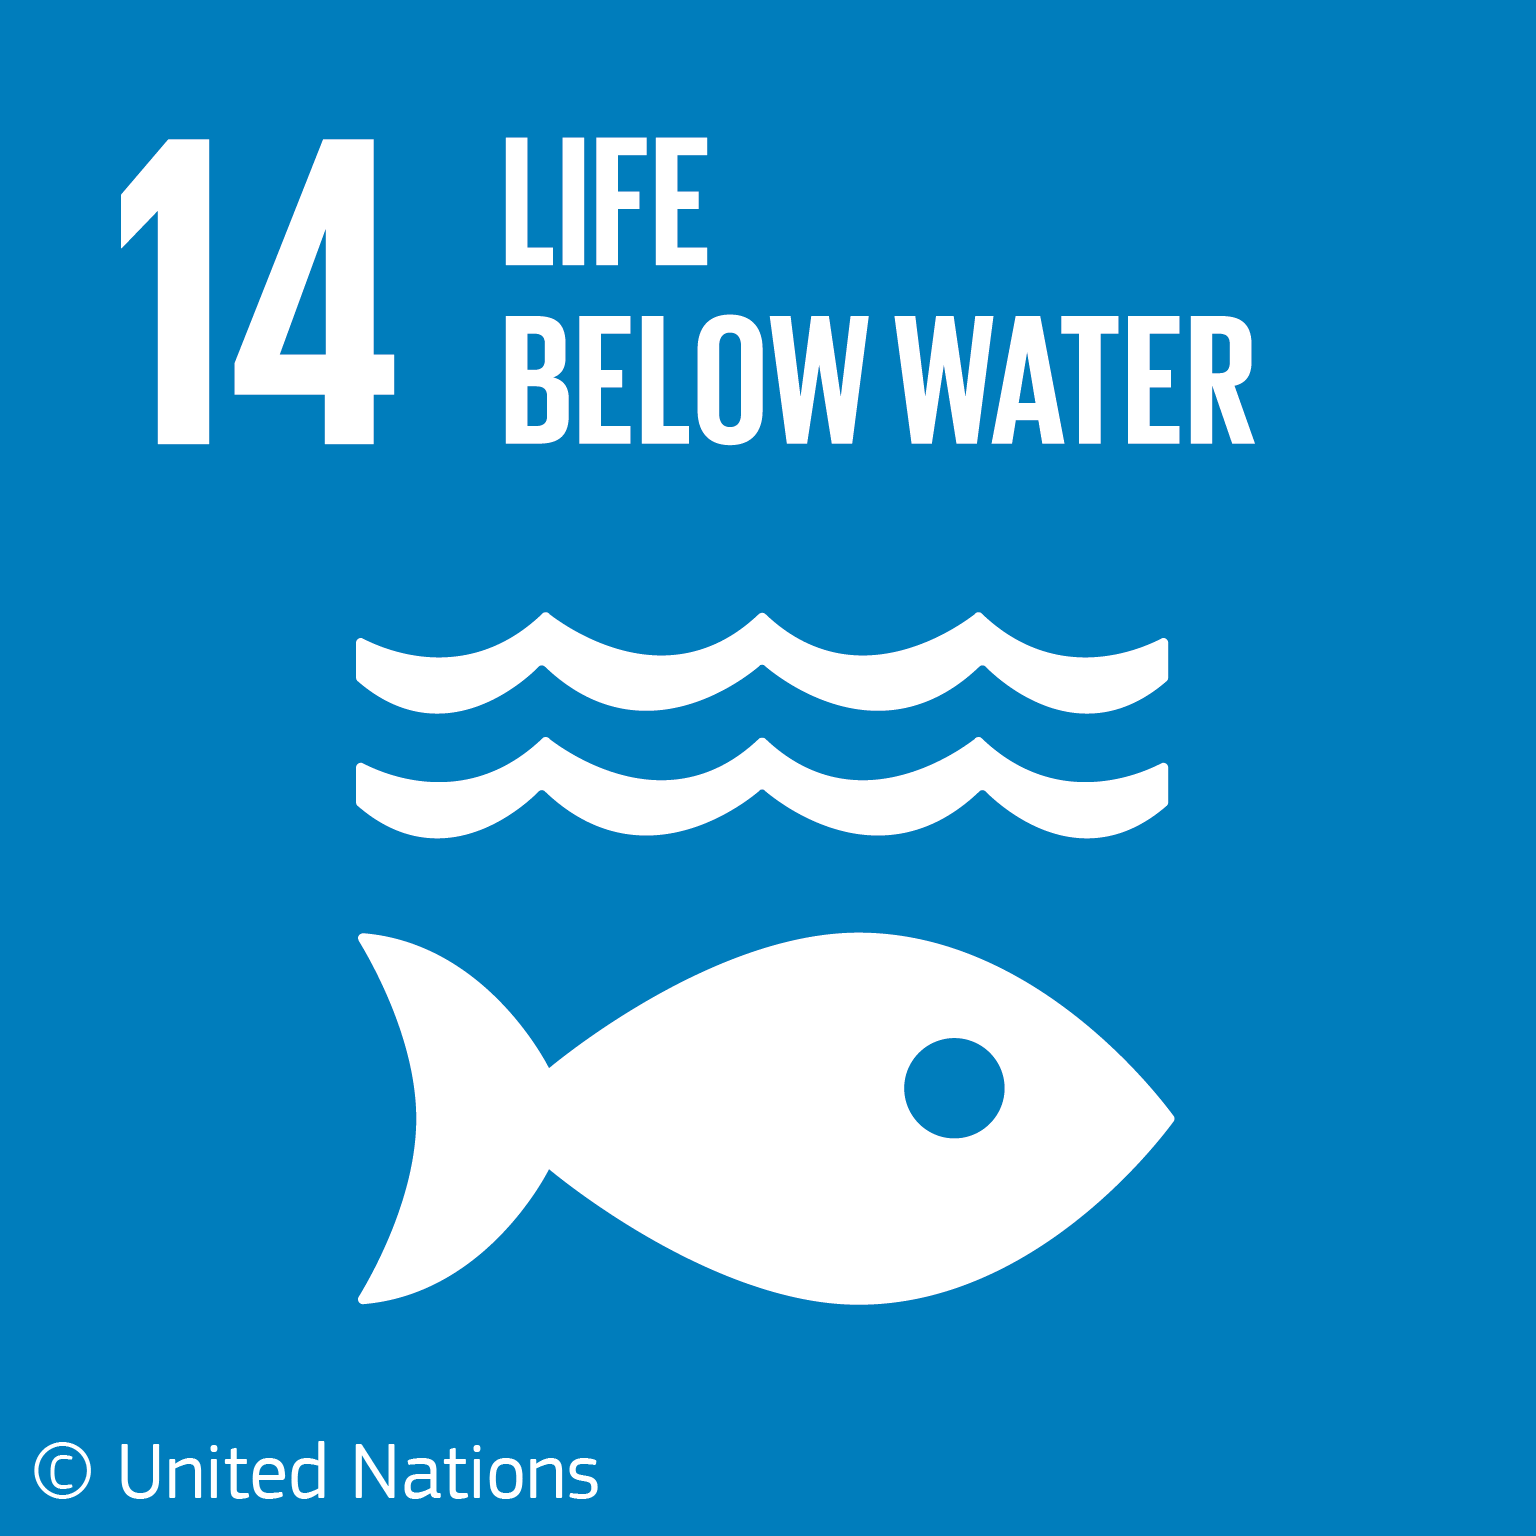 Šiame infografike su žuvies jūroje simboliu mėlyname fone vaizduojama gyvybė po vandeniu – tai keturioliktasis Jungtinių Tautų darnaus vystymosi tikslas.